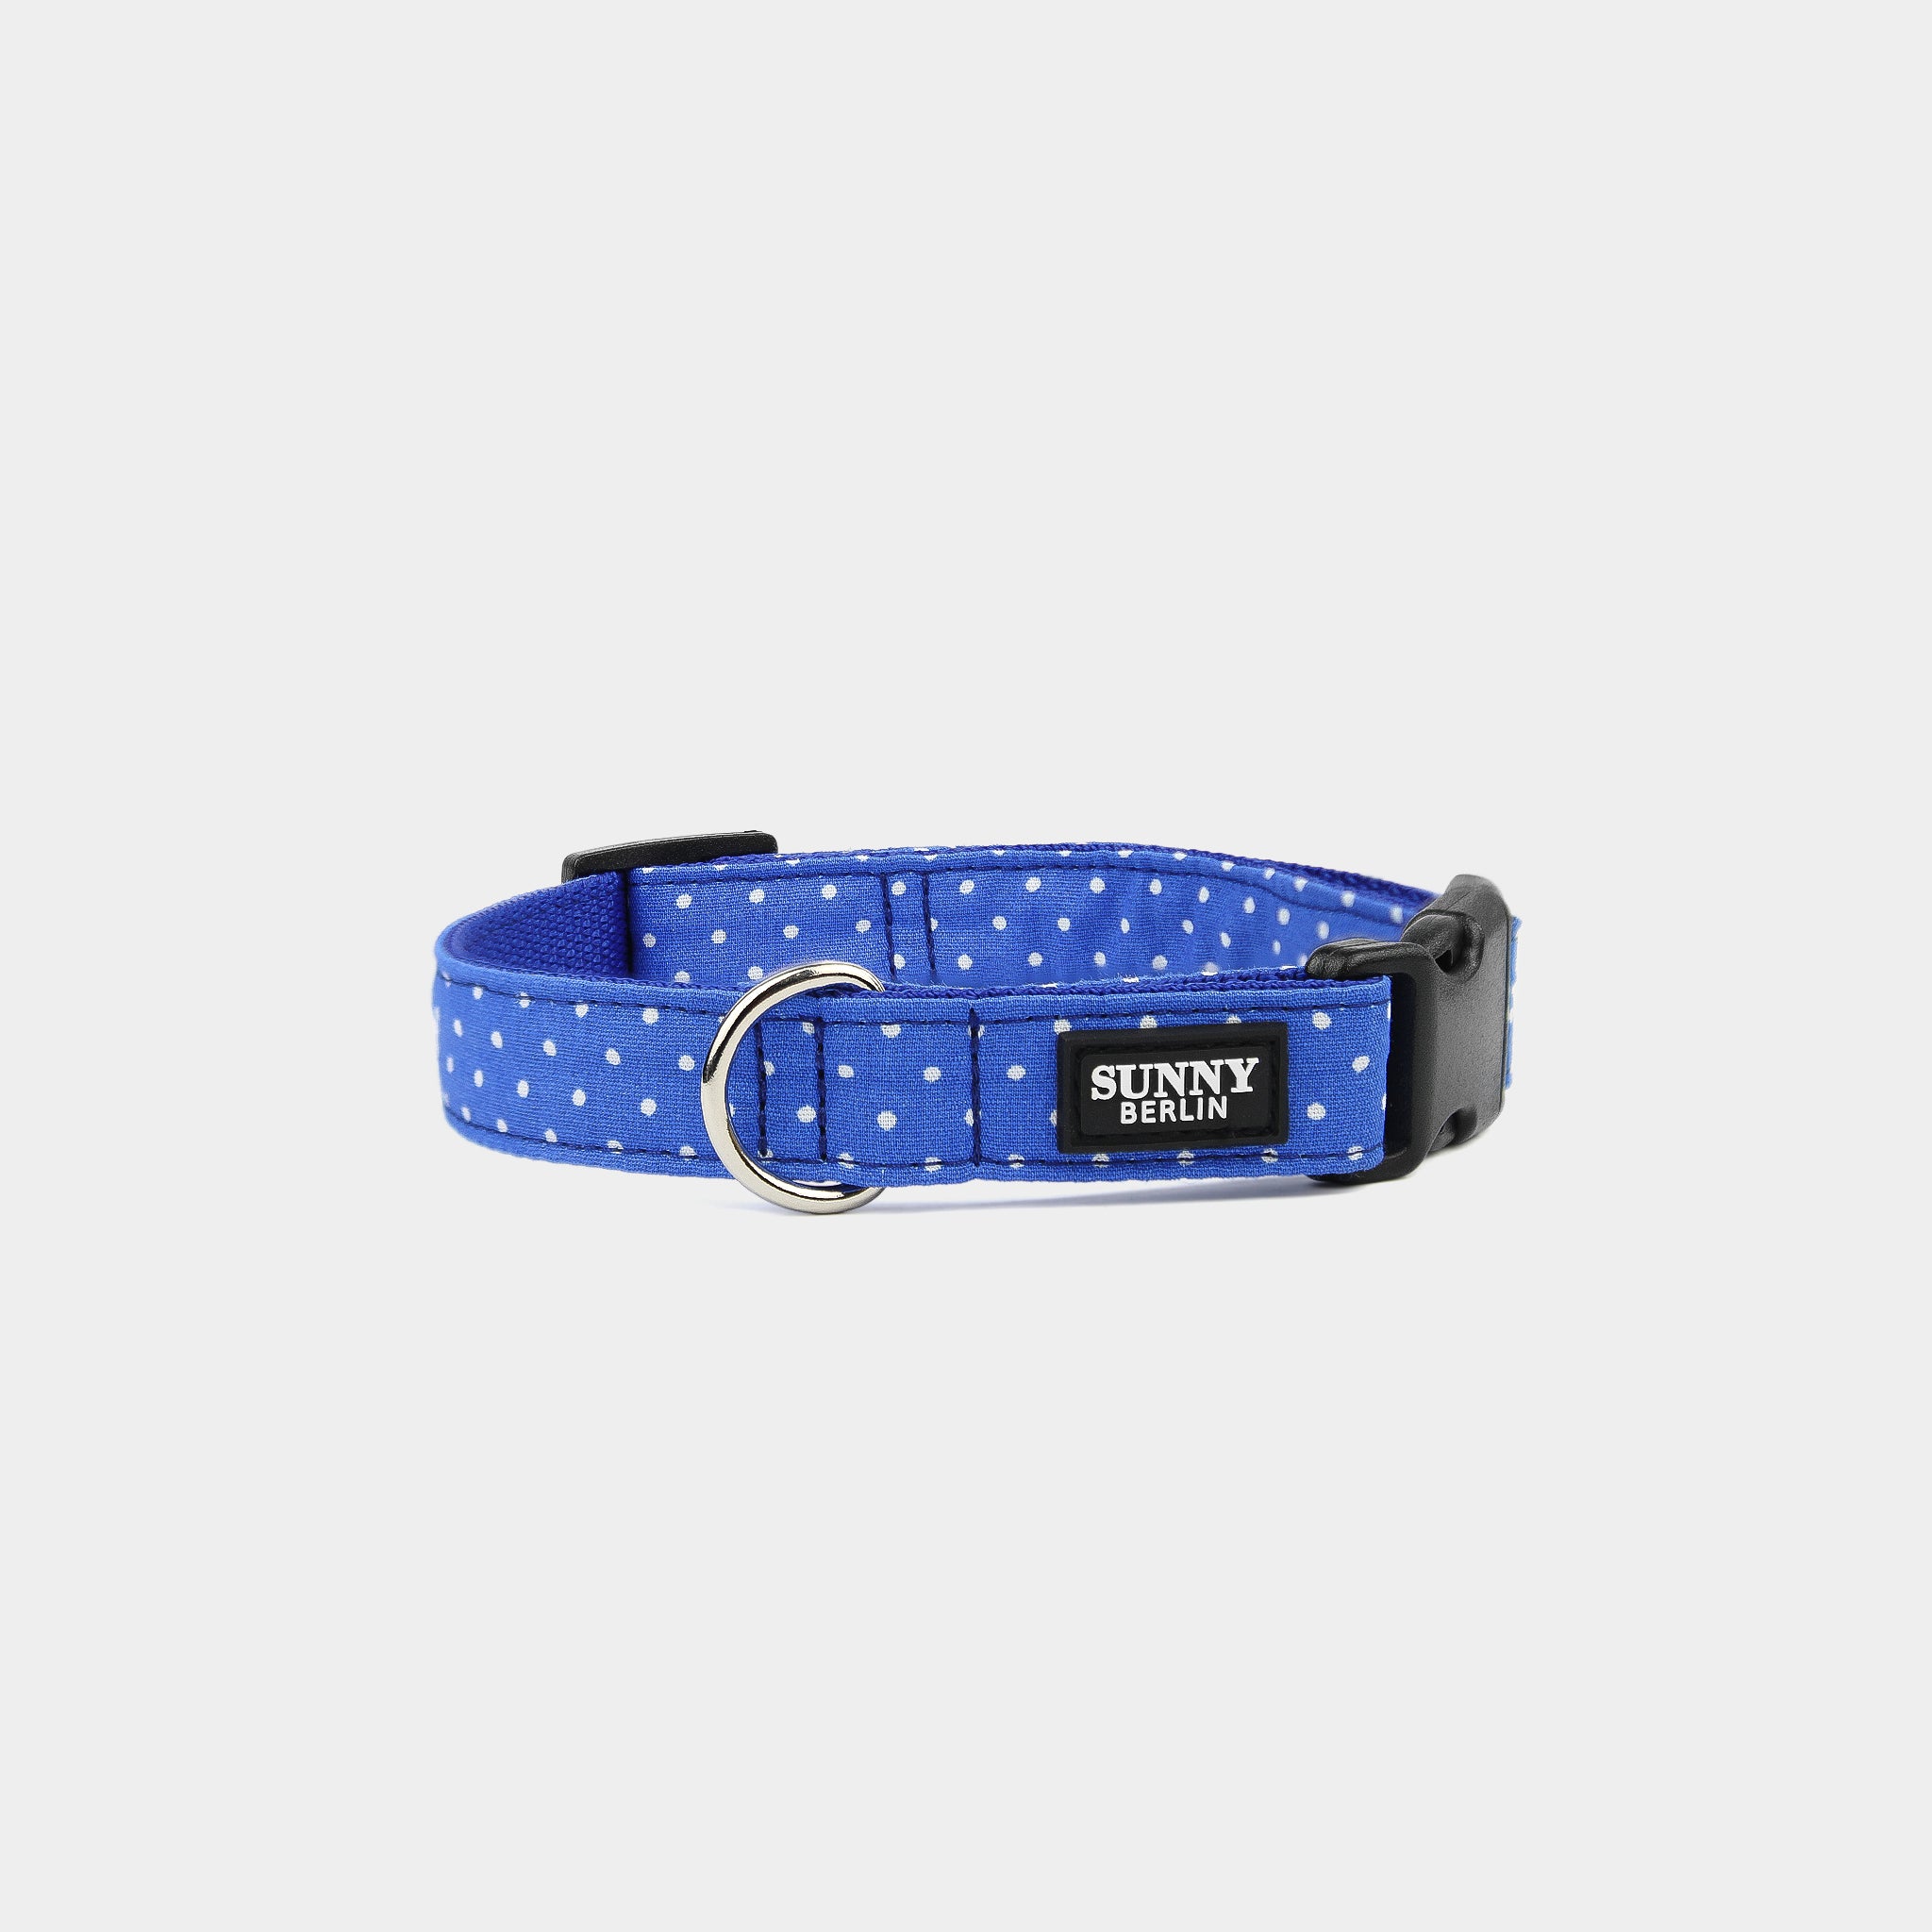 Blaues Hundehalsband mit weißen Punkten